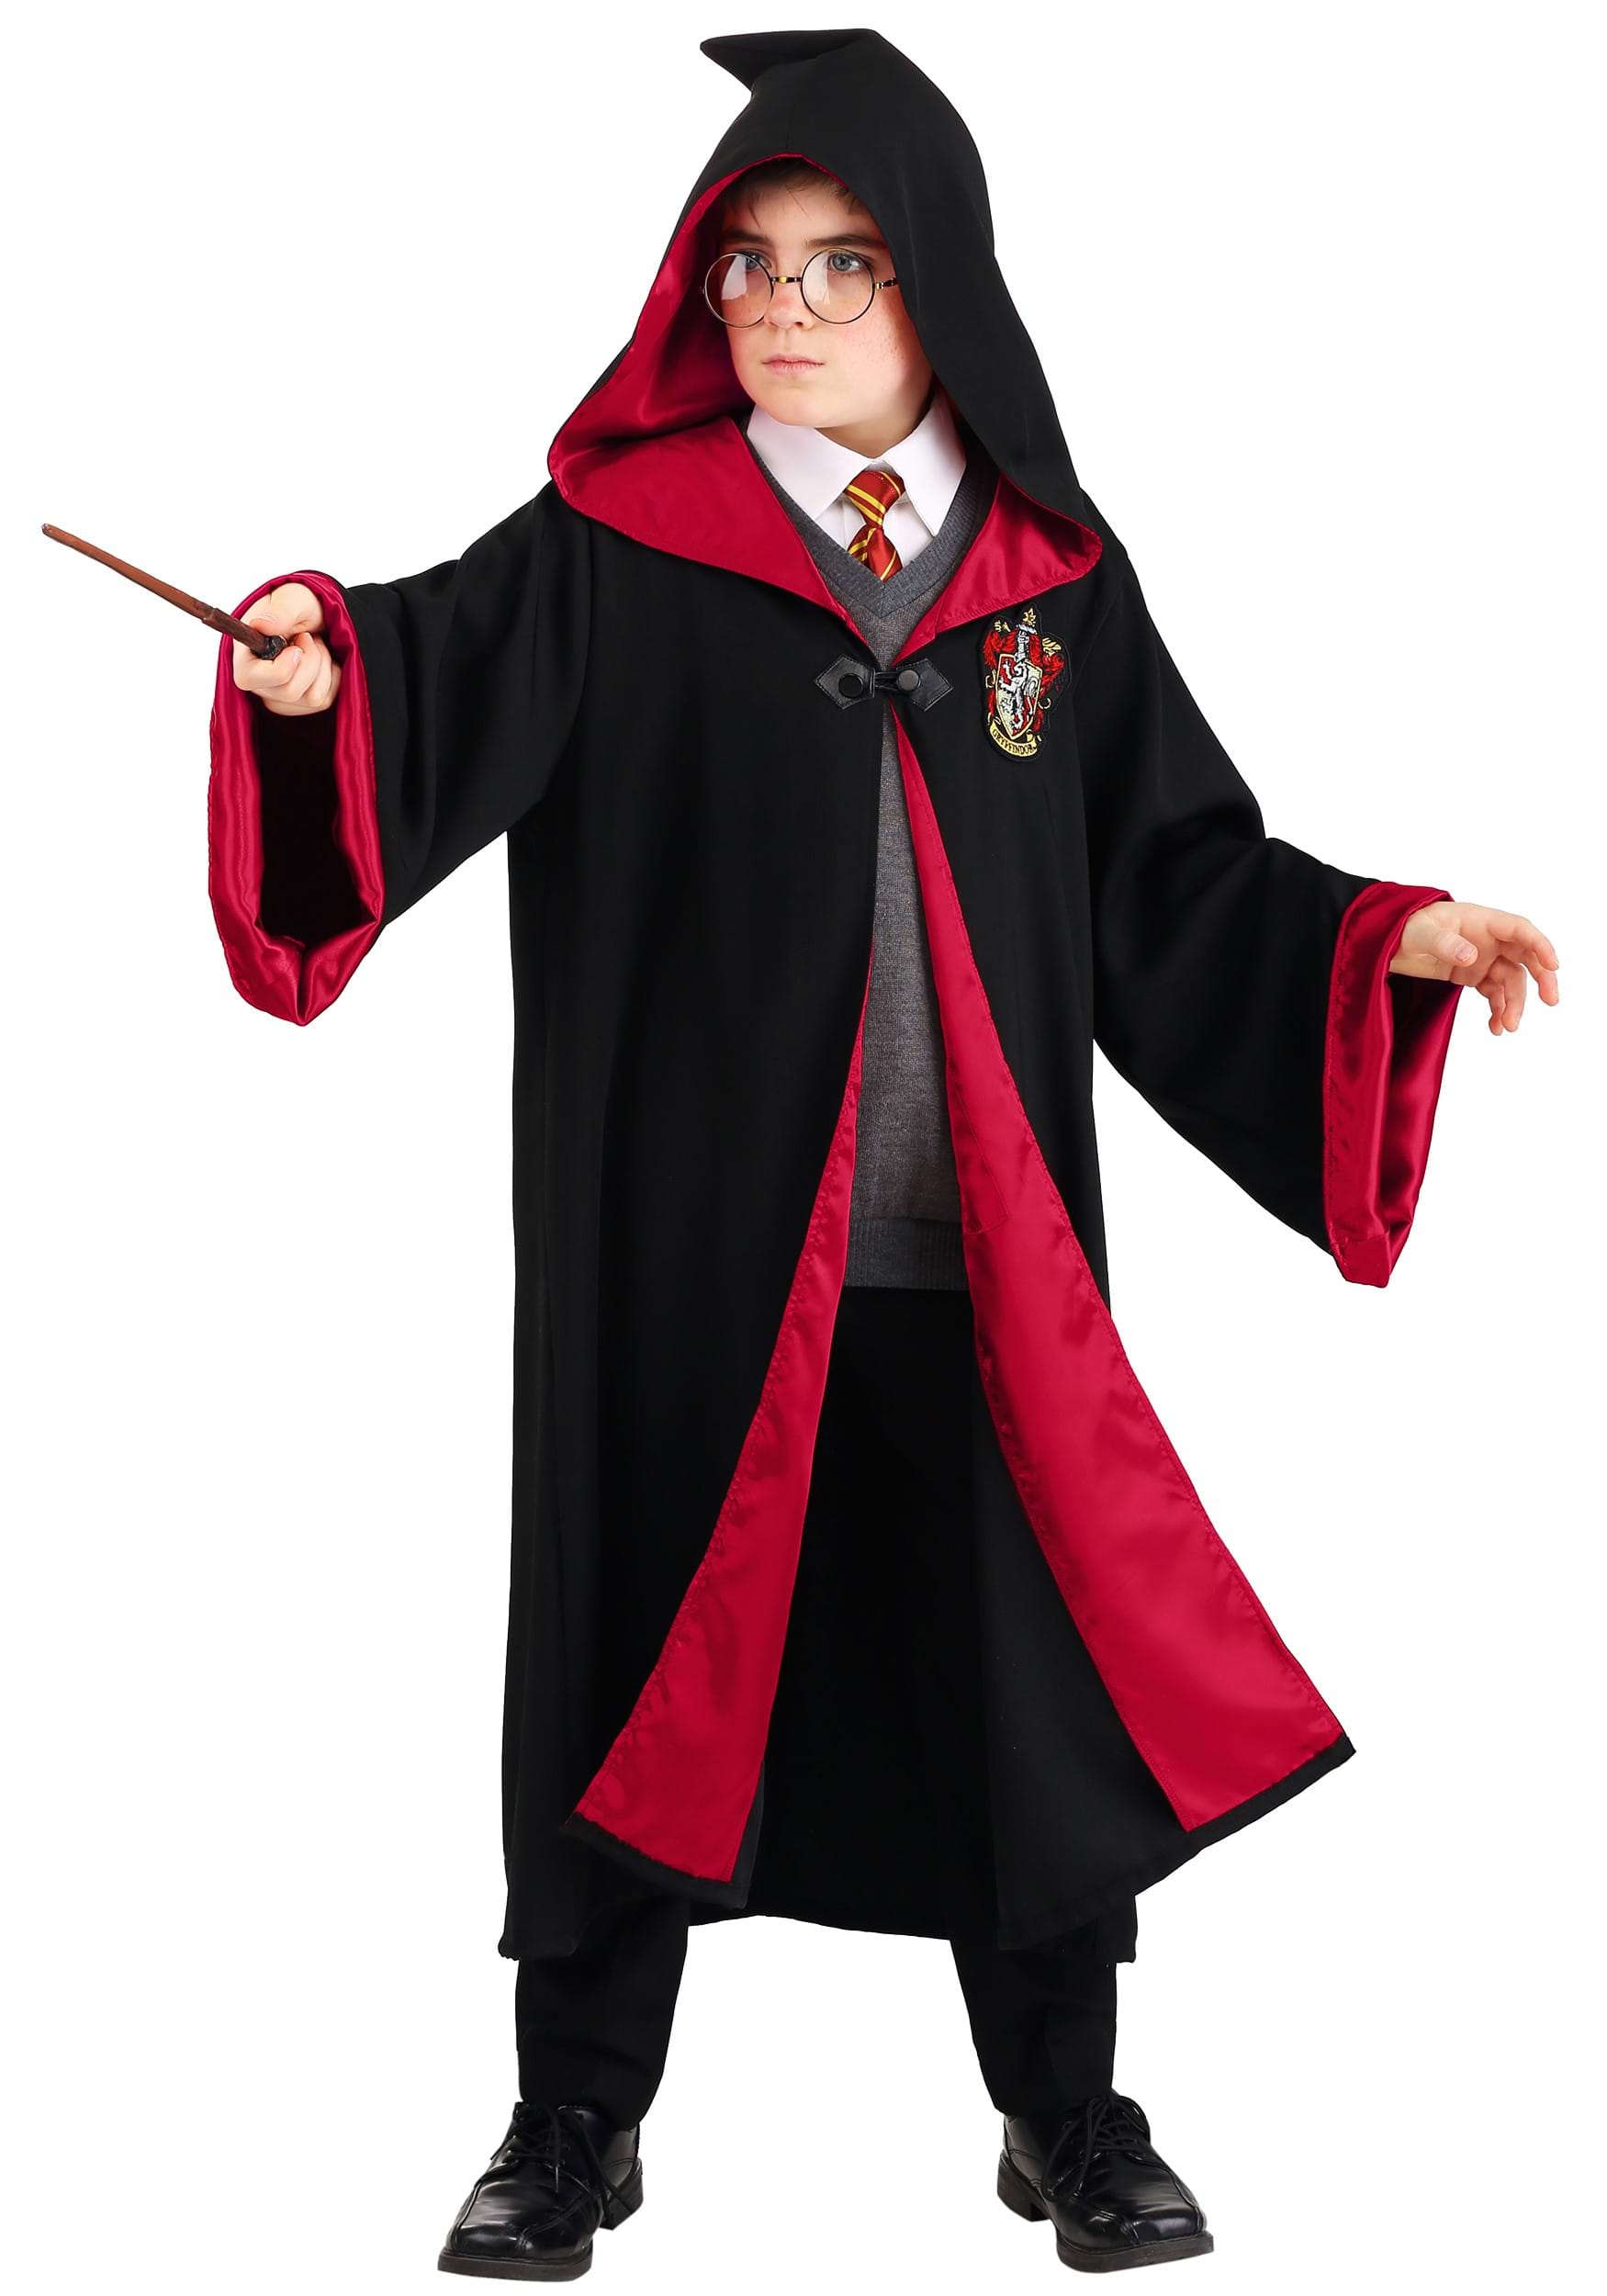 Kids' Deluxe Harry Potter Hogwarts Robe Costume - 10-12 - Black